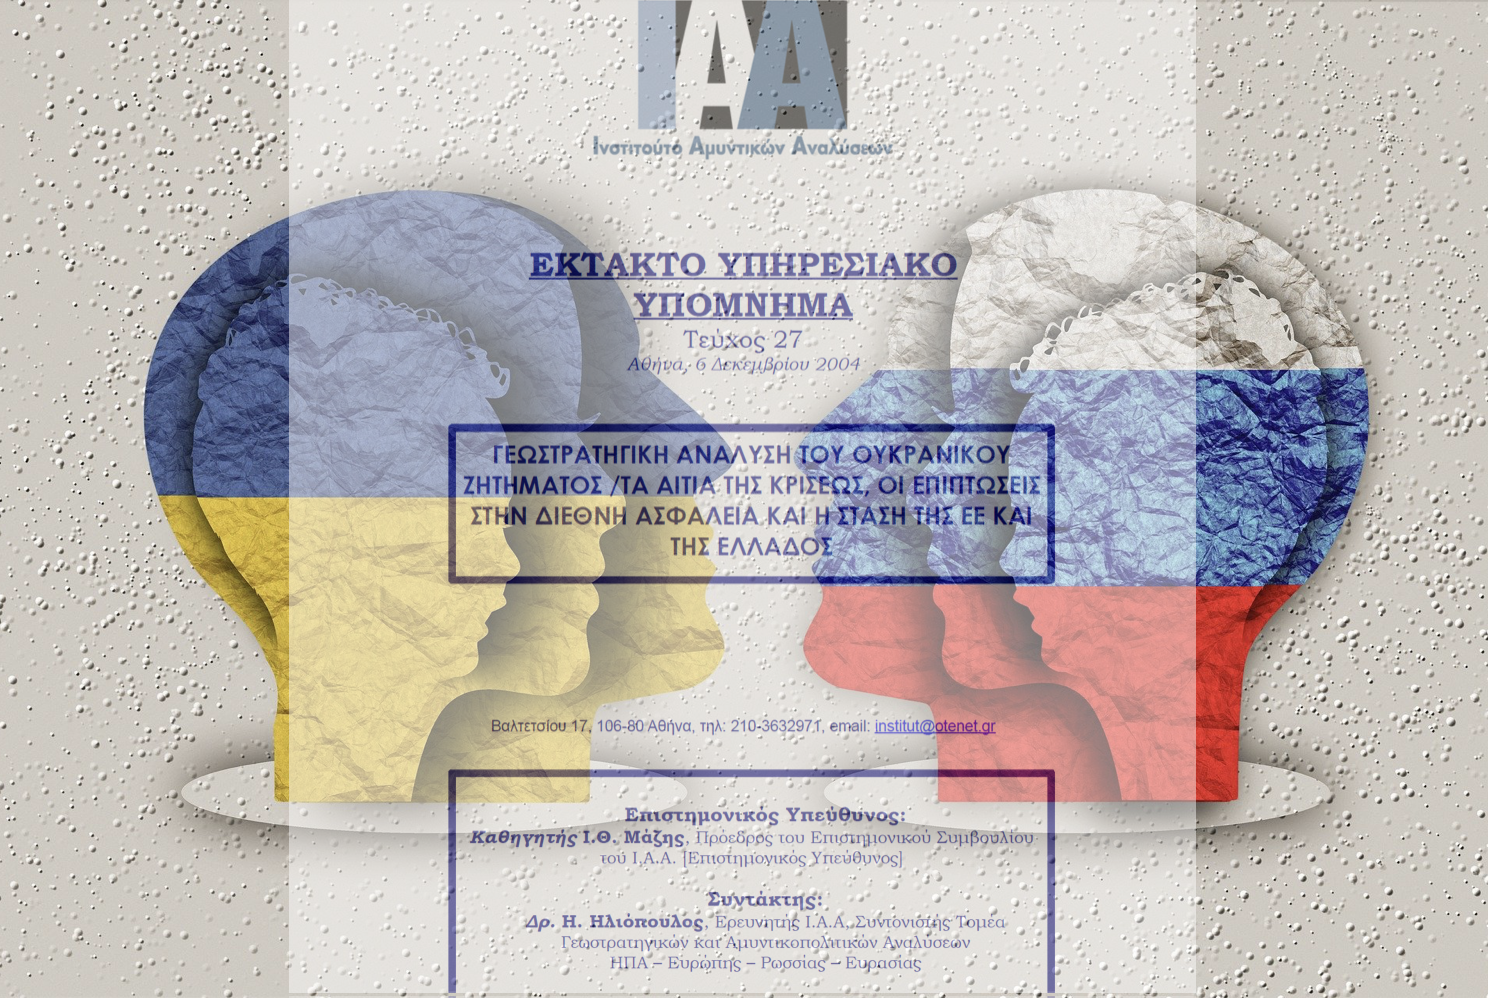  Το άκρως προφητικό «Έκτακτο Υπηρεσιακό Υπόμνημα» για την Ουκρανία με ελληνική υπογραφή από το 2004!